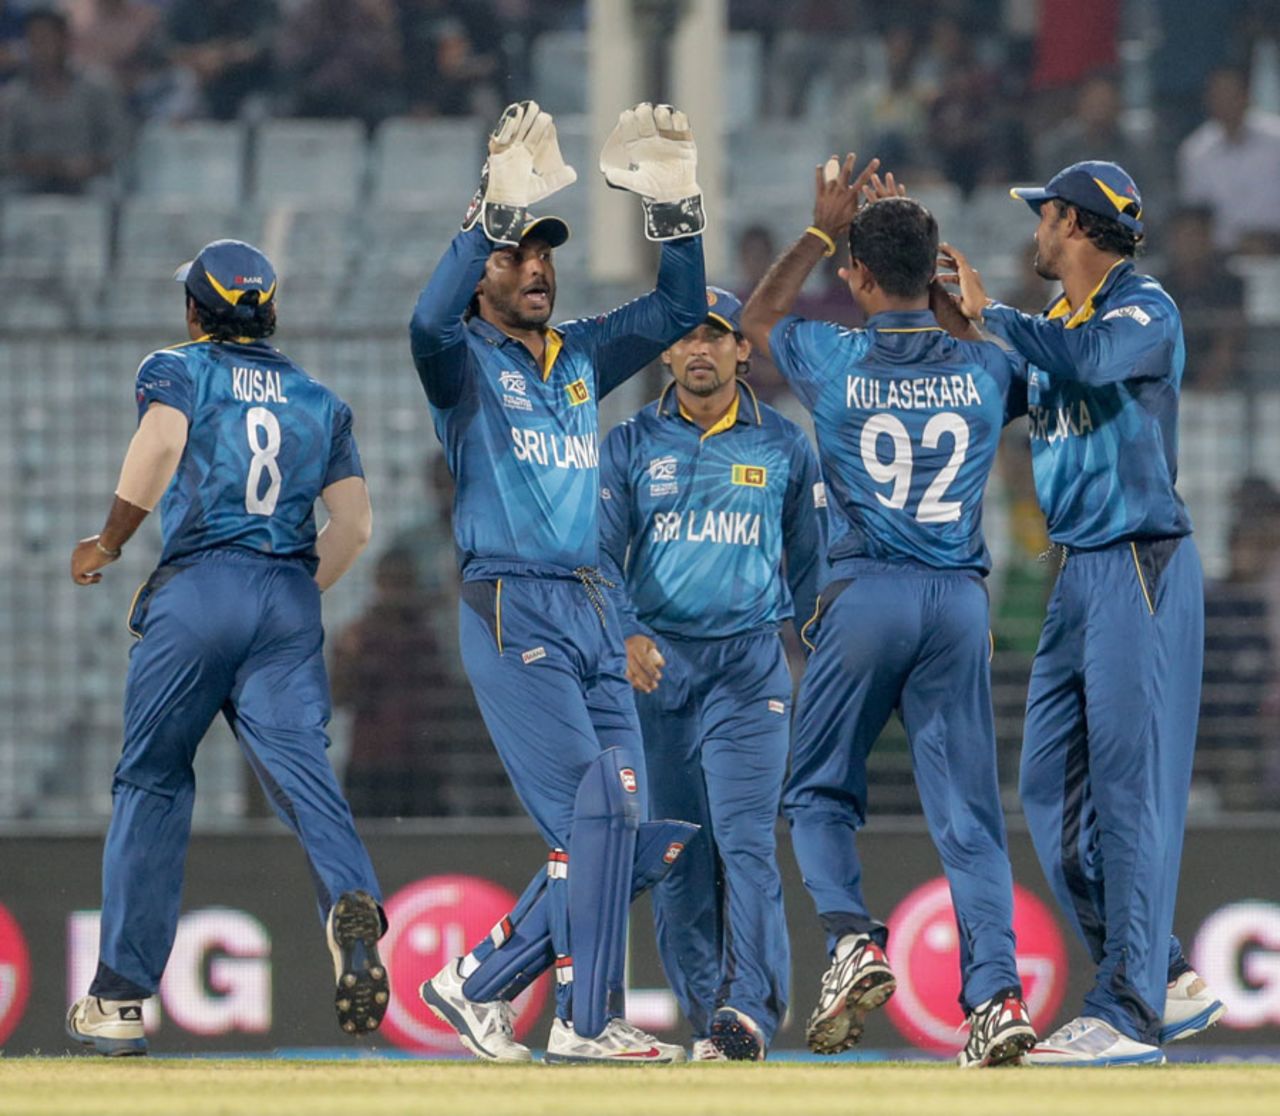 Nuwan Kulasekara got the first breakthrough for Sri Lanka, Netherlands v Sri Lanka, World T20, Group 1, March 24, 2014